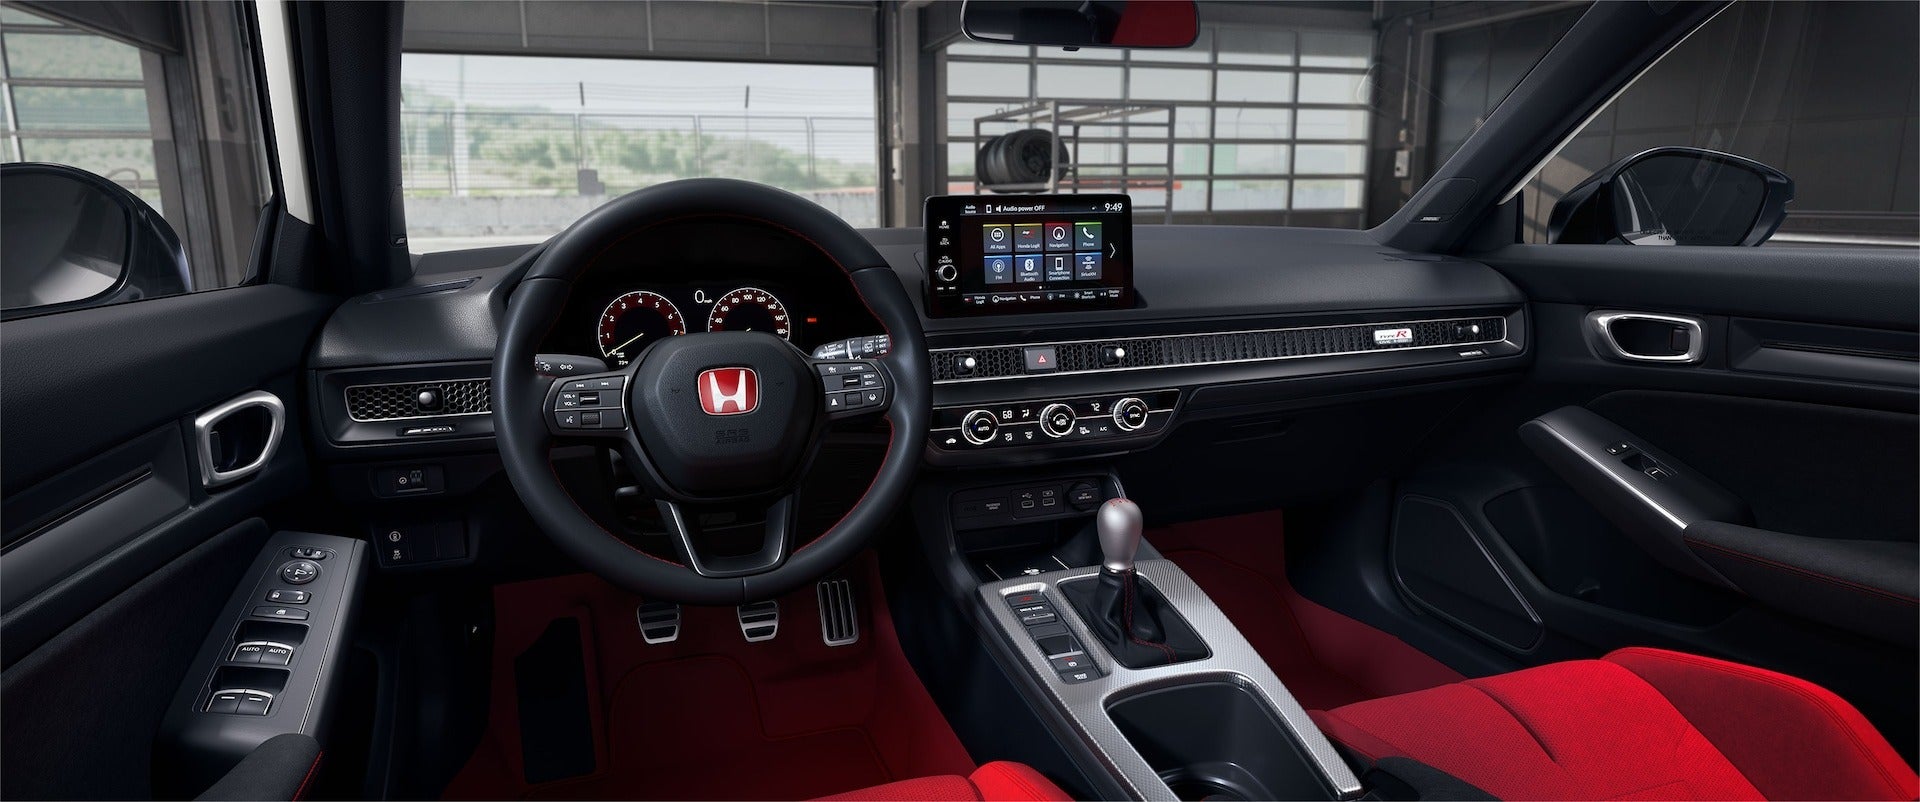 2024_Honda_Civic_Type_R_interior_cockpit.